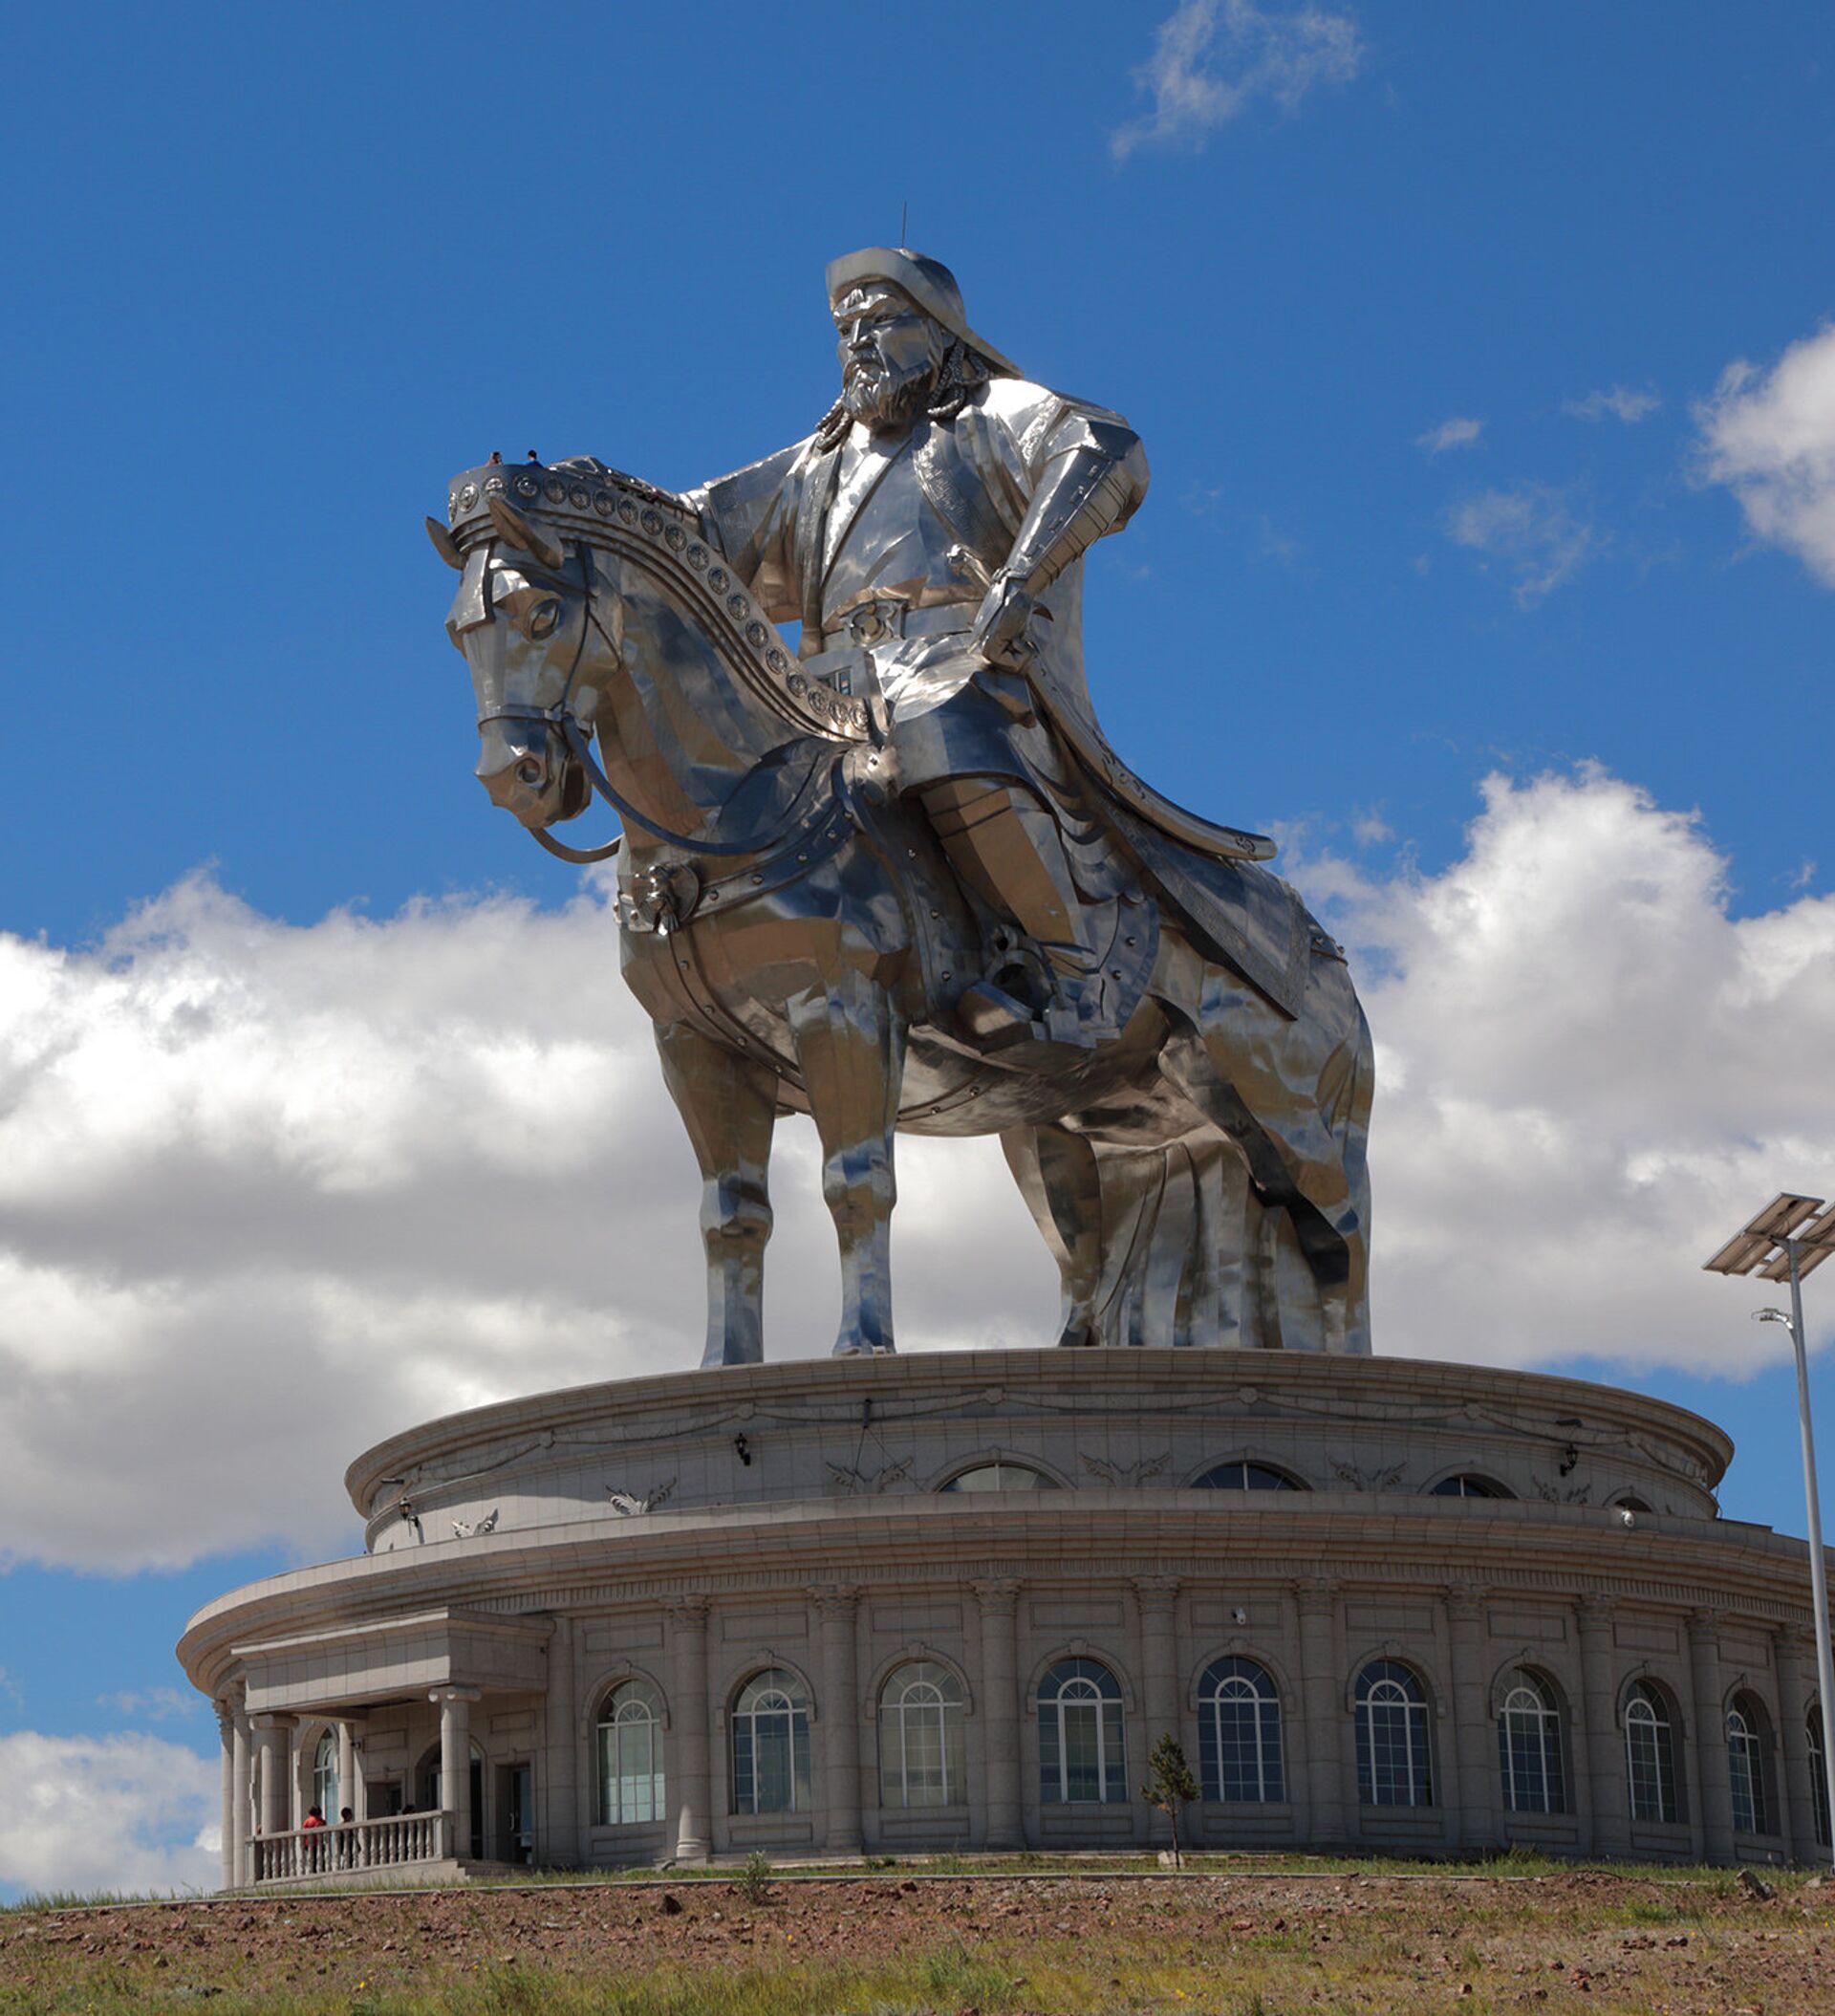 “Чингис хааны ертөнц ба Монгол судлал” цогц арга хэмжээг зохион байгуулна